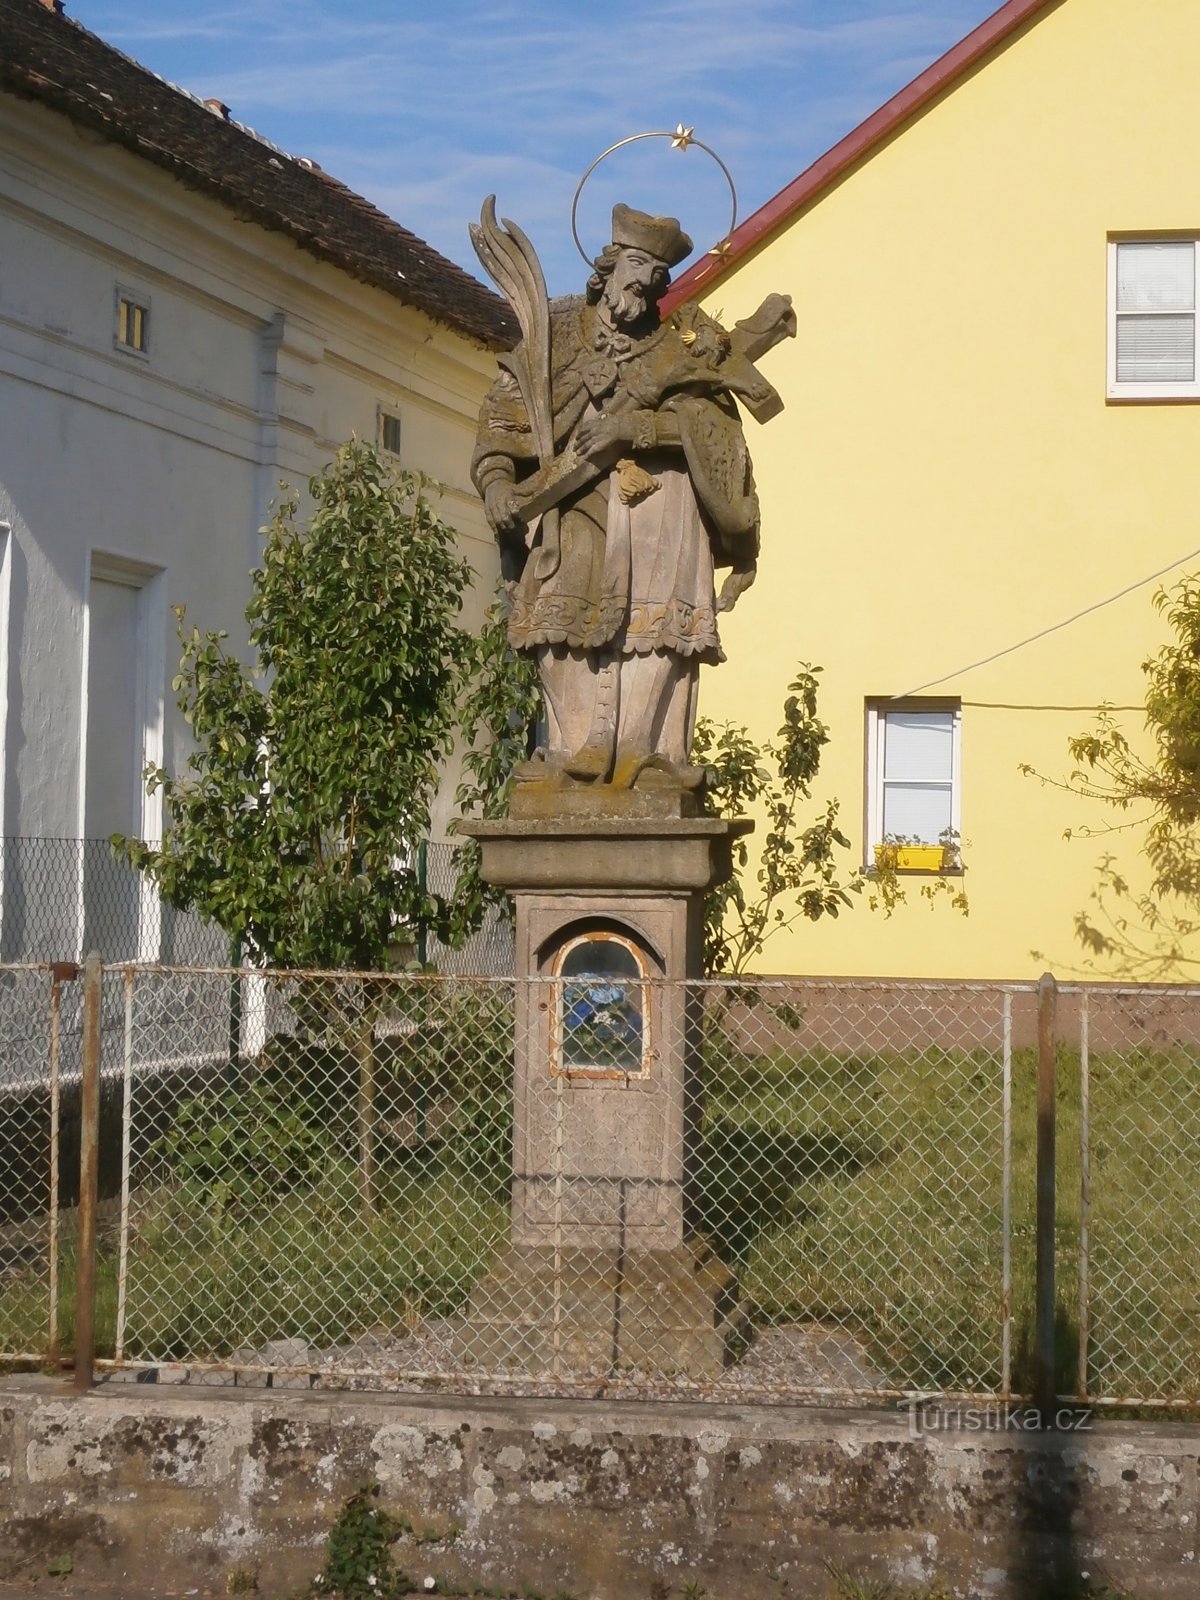 Tượng của St. John of Nepomuck, trước đây được đi kèm với tháp chuông ban đầu (Černožice